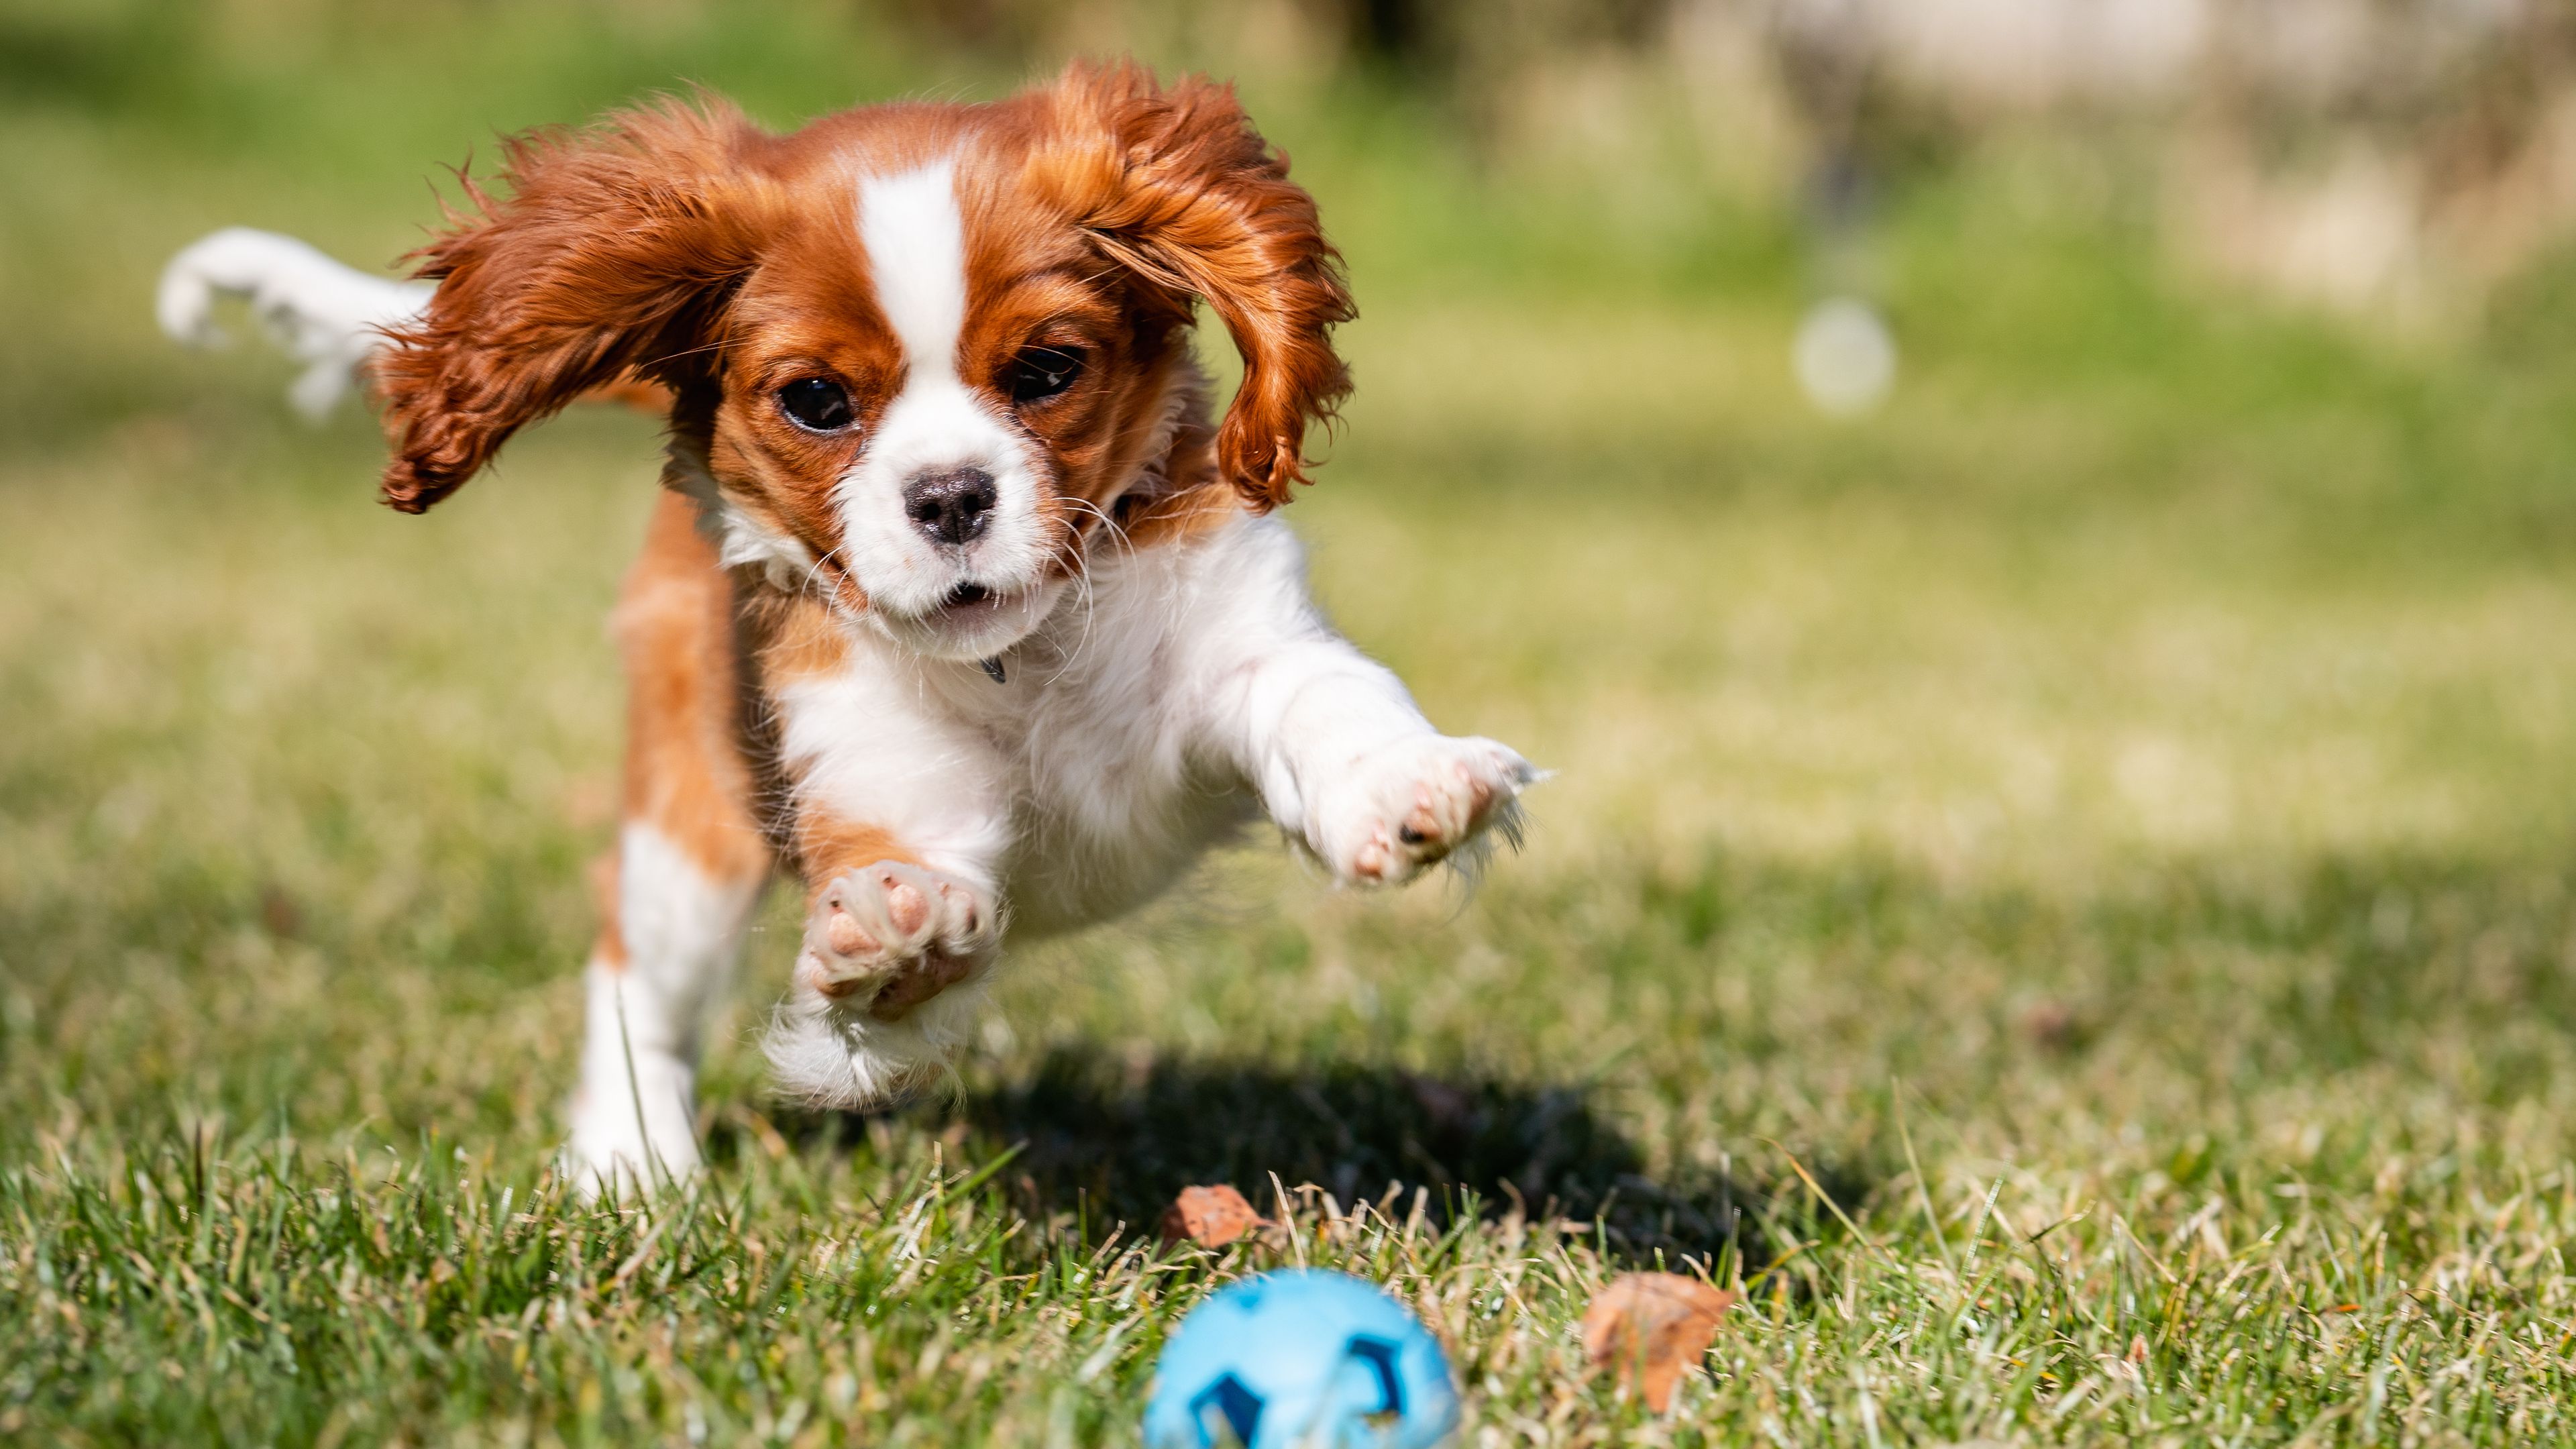 cane che rincorre una pallina in giardino